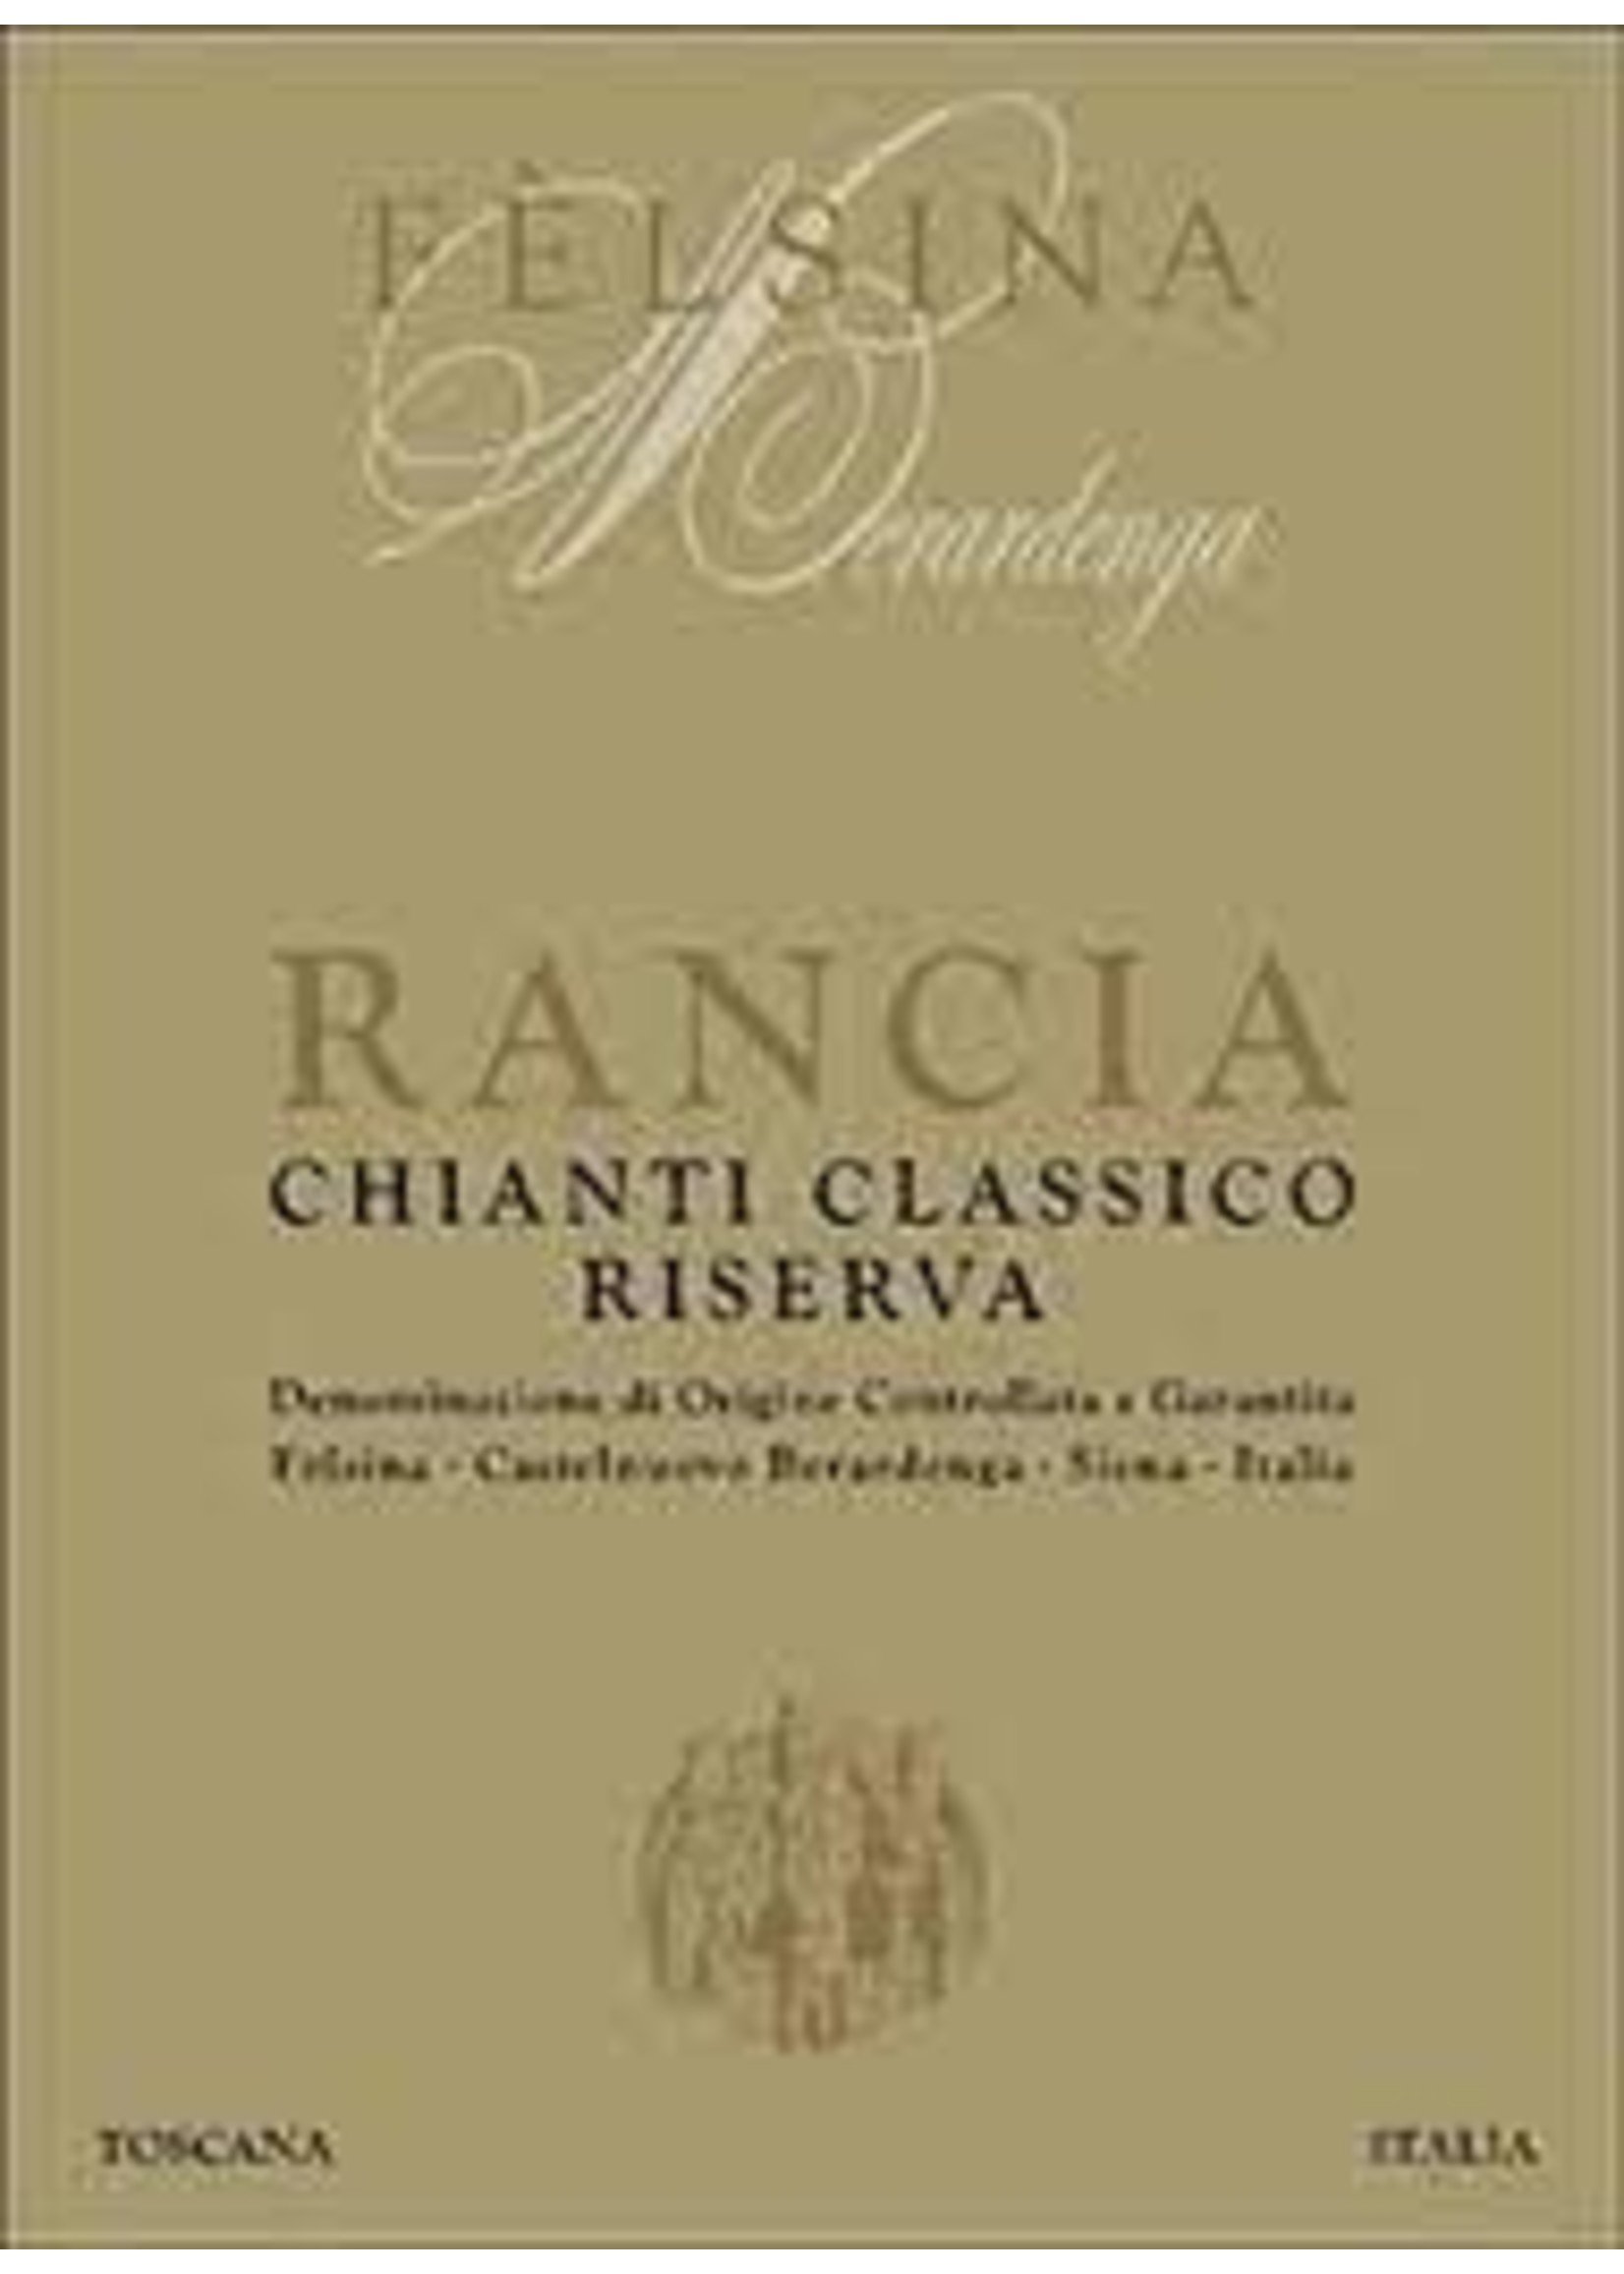 Felsina 2018 Chianti Classico Rancia Riserva 750ml